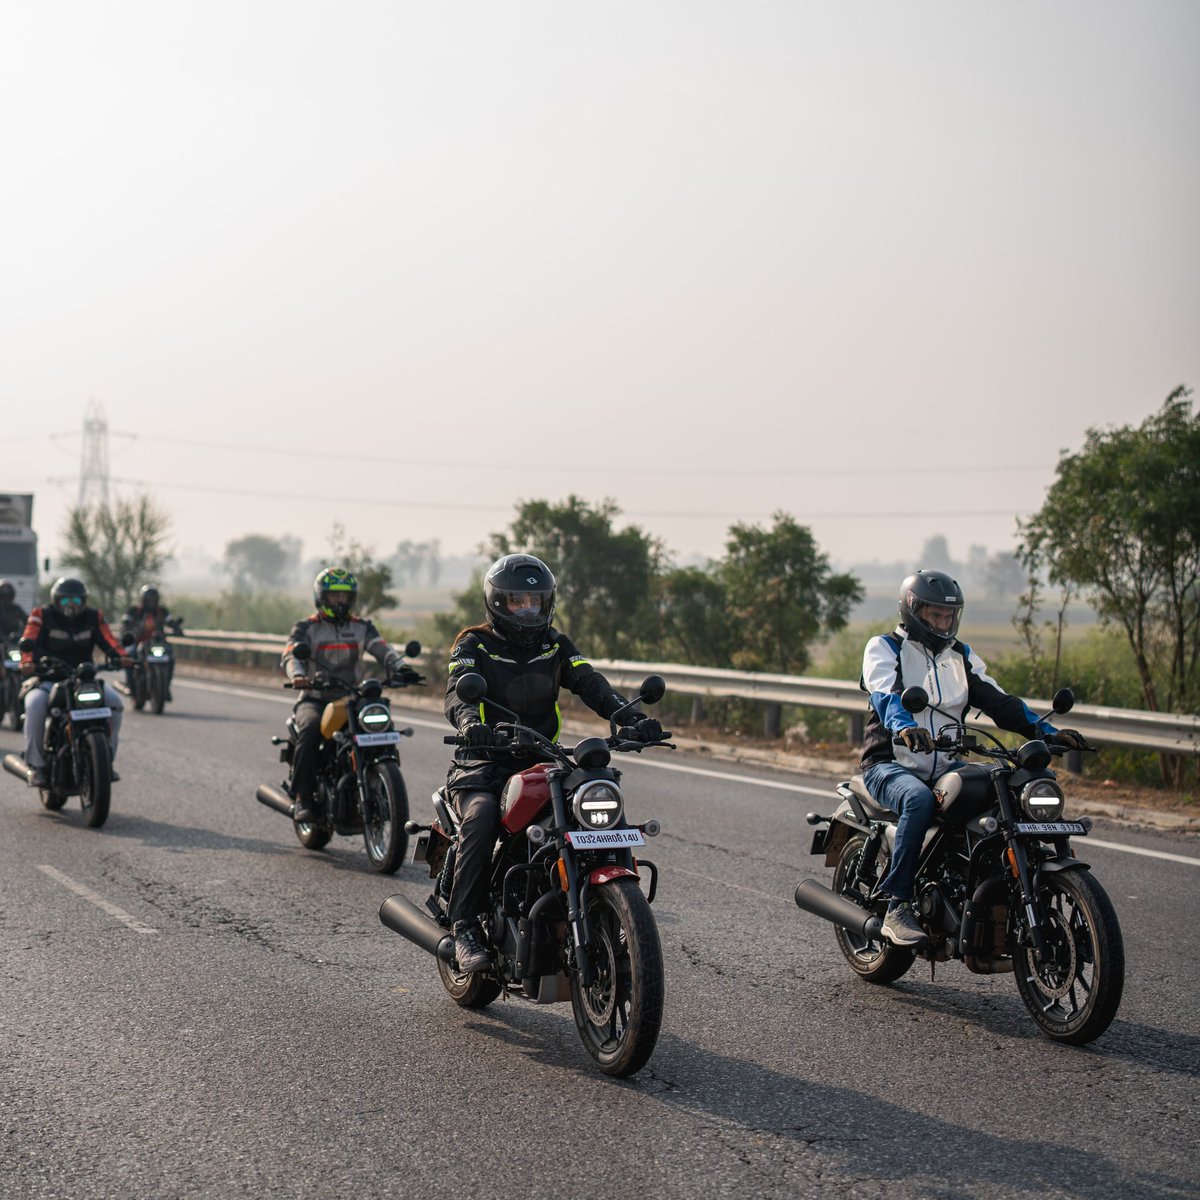 Hit the highway this Sunday! Who are you riding with?    

#HarleyDavidson #HarleyDavidsonIndia #HDIndia #SundaySteel #Sunday #Riding